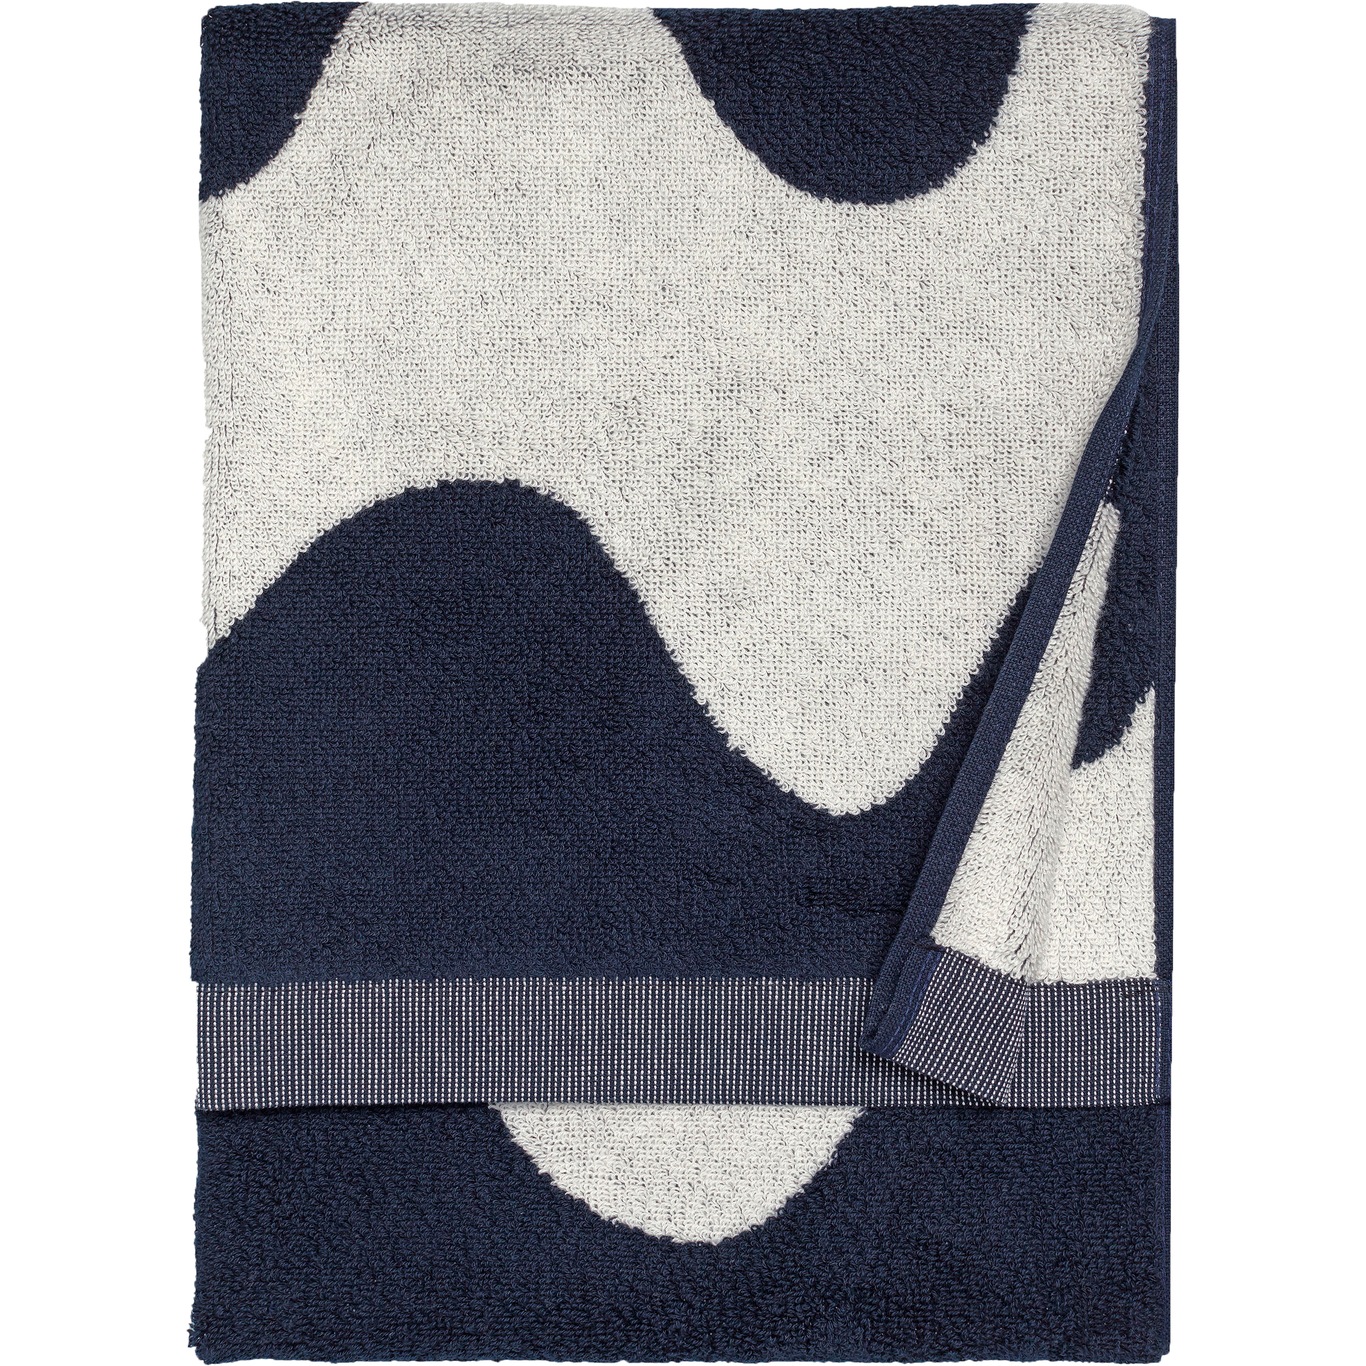 Lokki Håndkle Mørkeblå / Off-white, 50x70 cm